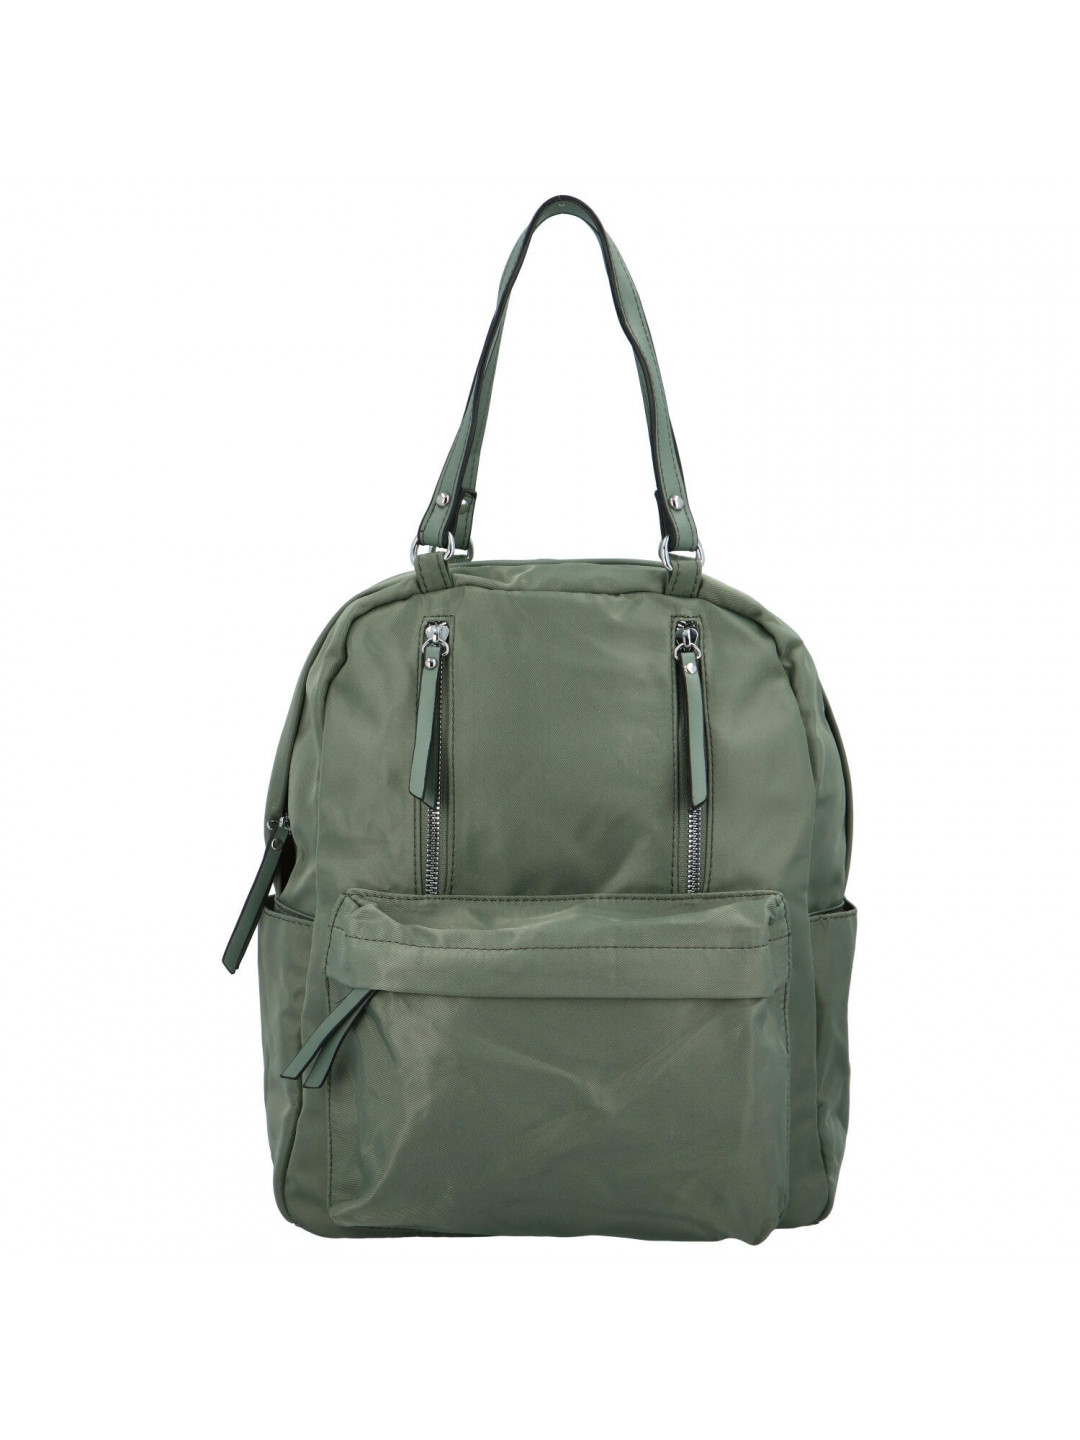 Moderní dámský látkový kabelko batoh Anita zelená